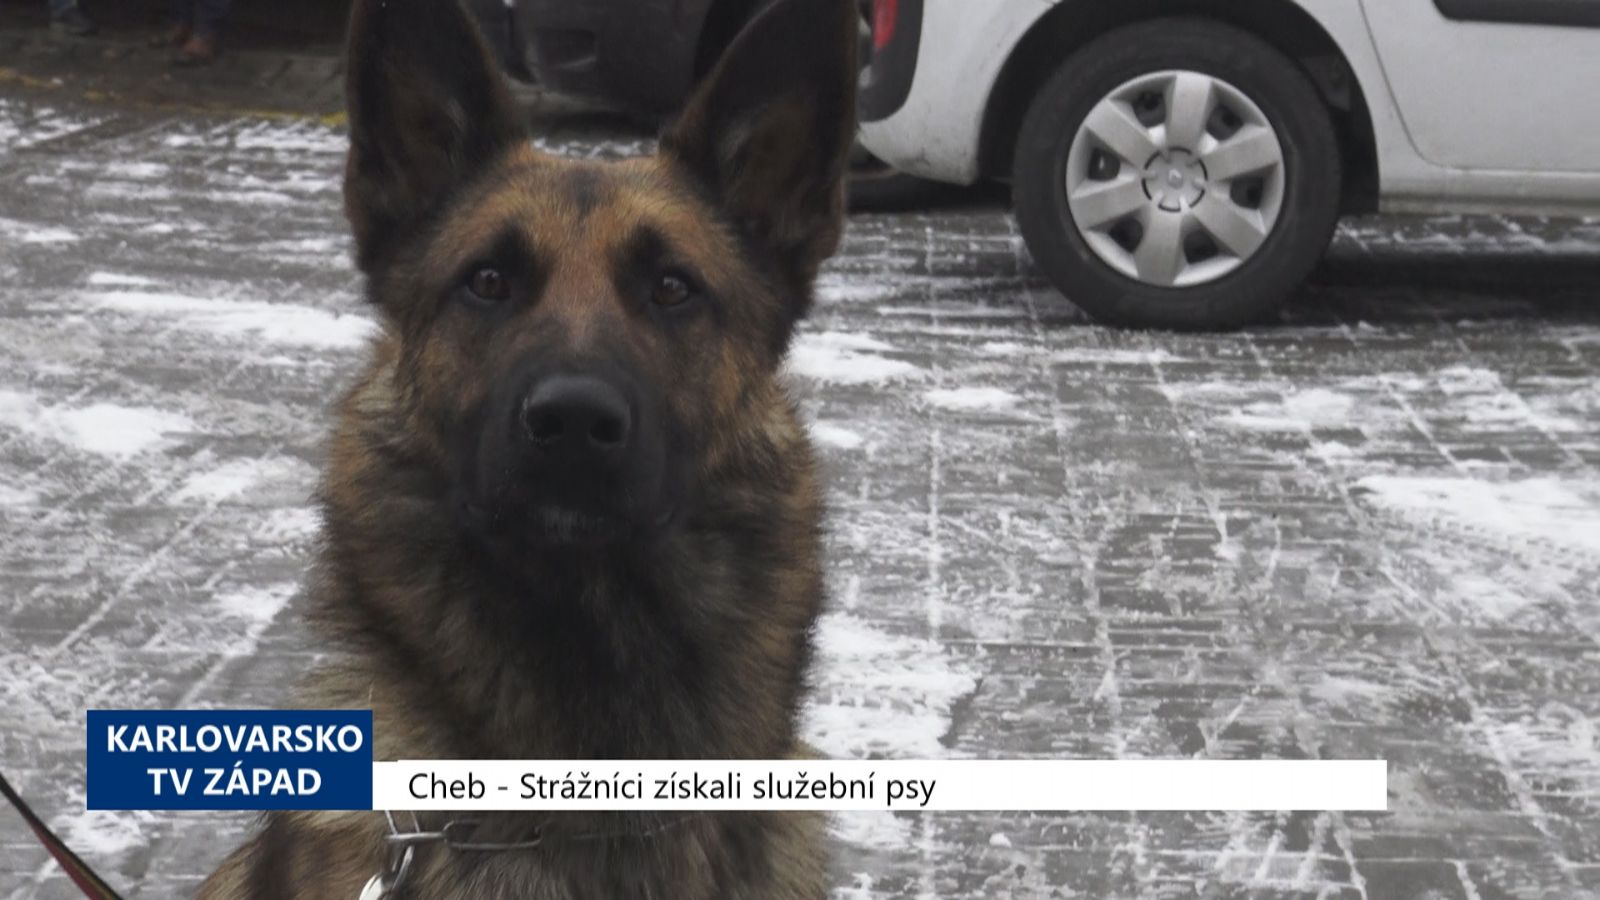 Cheb: Strážníci získali služební psy (TV Západ)